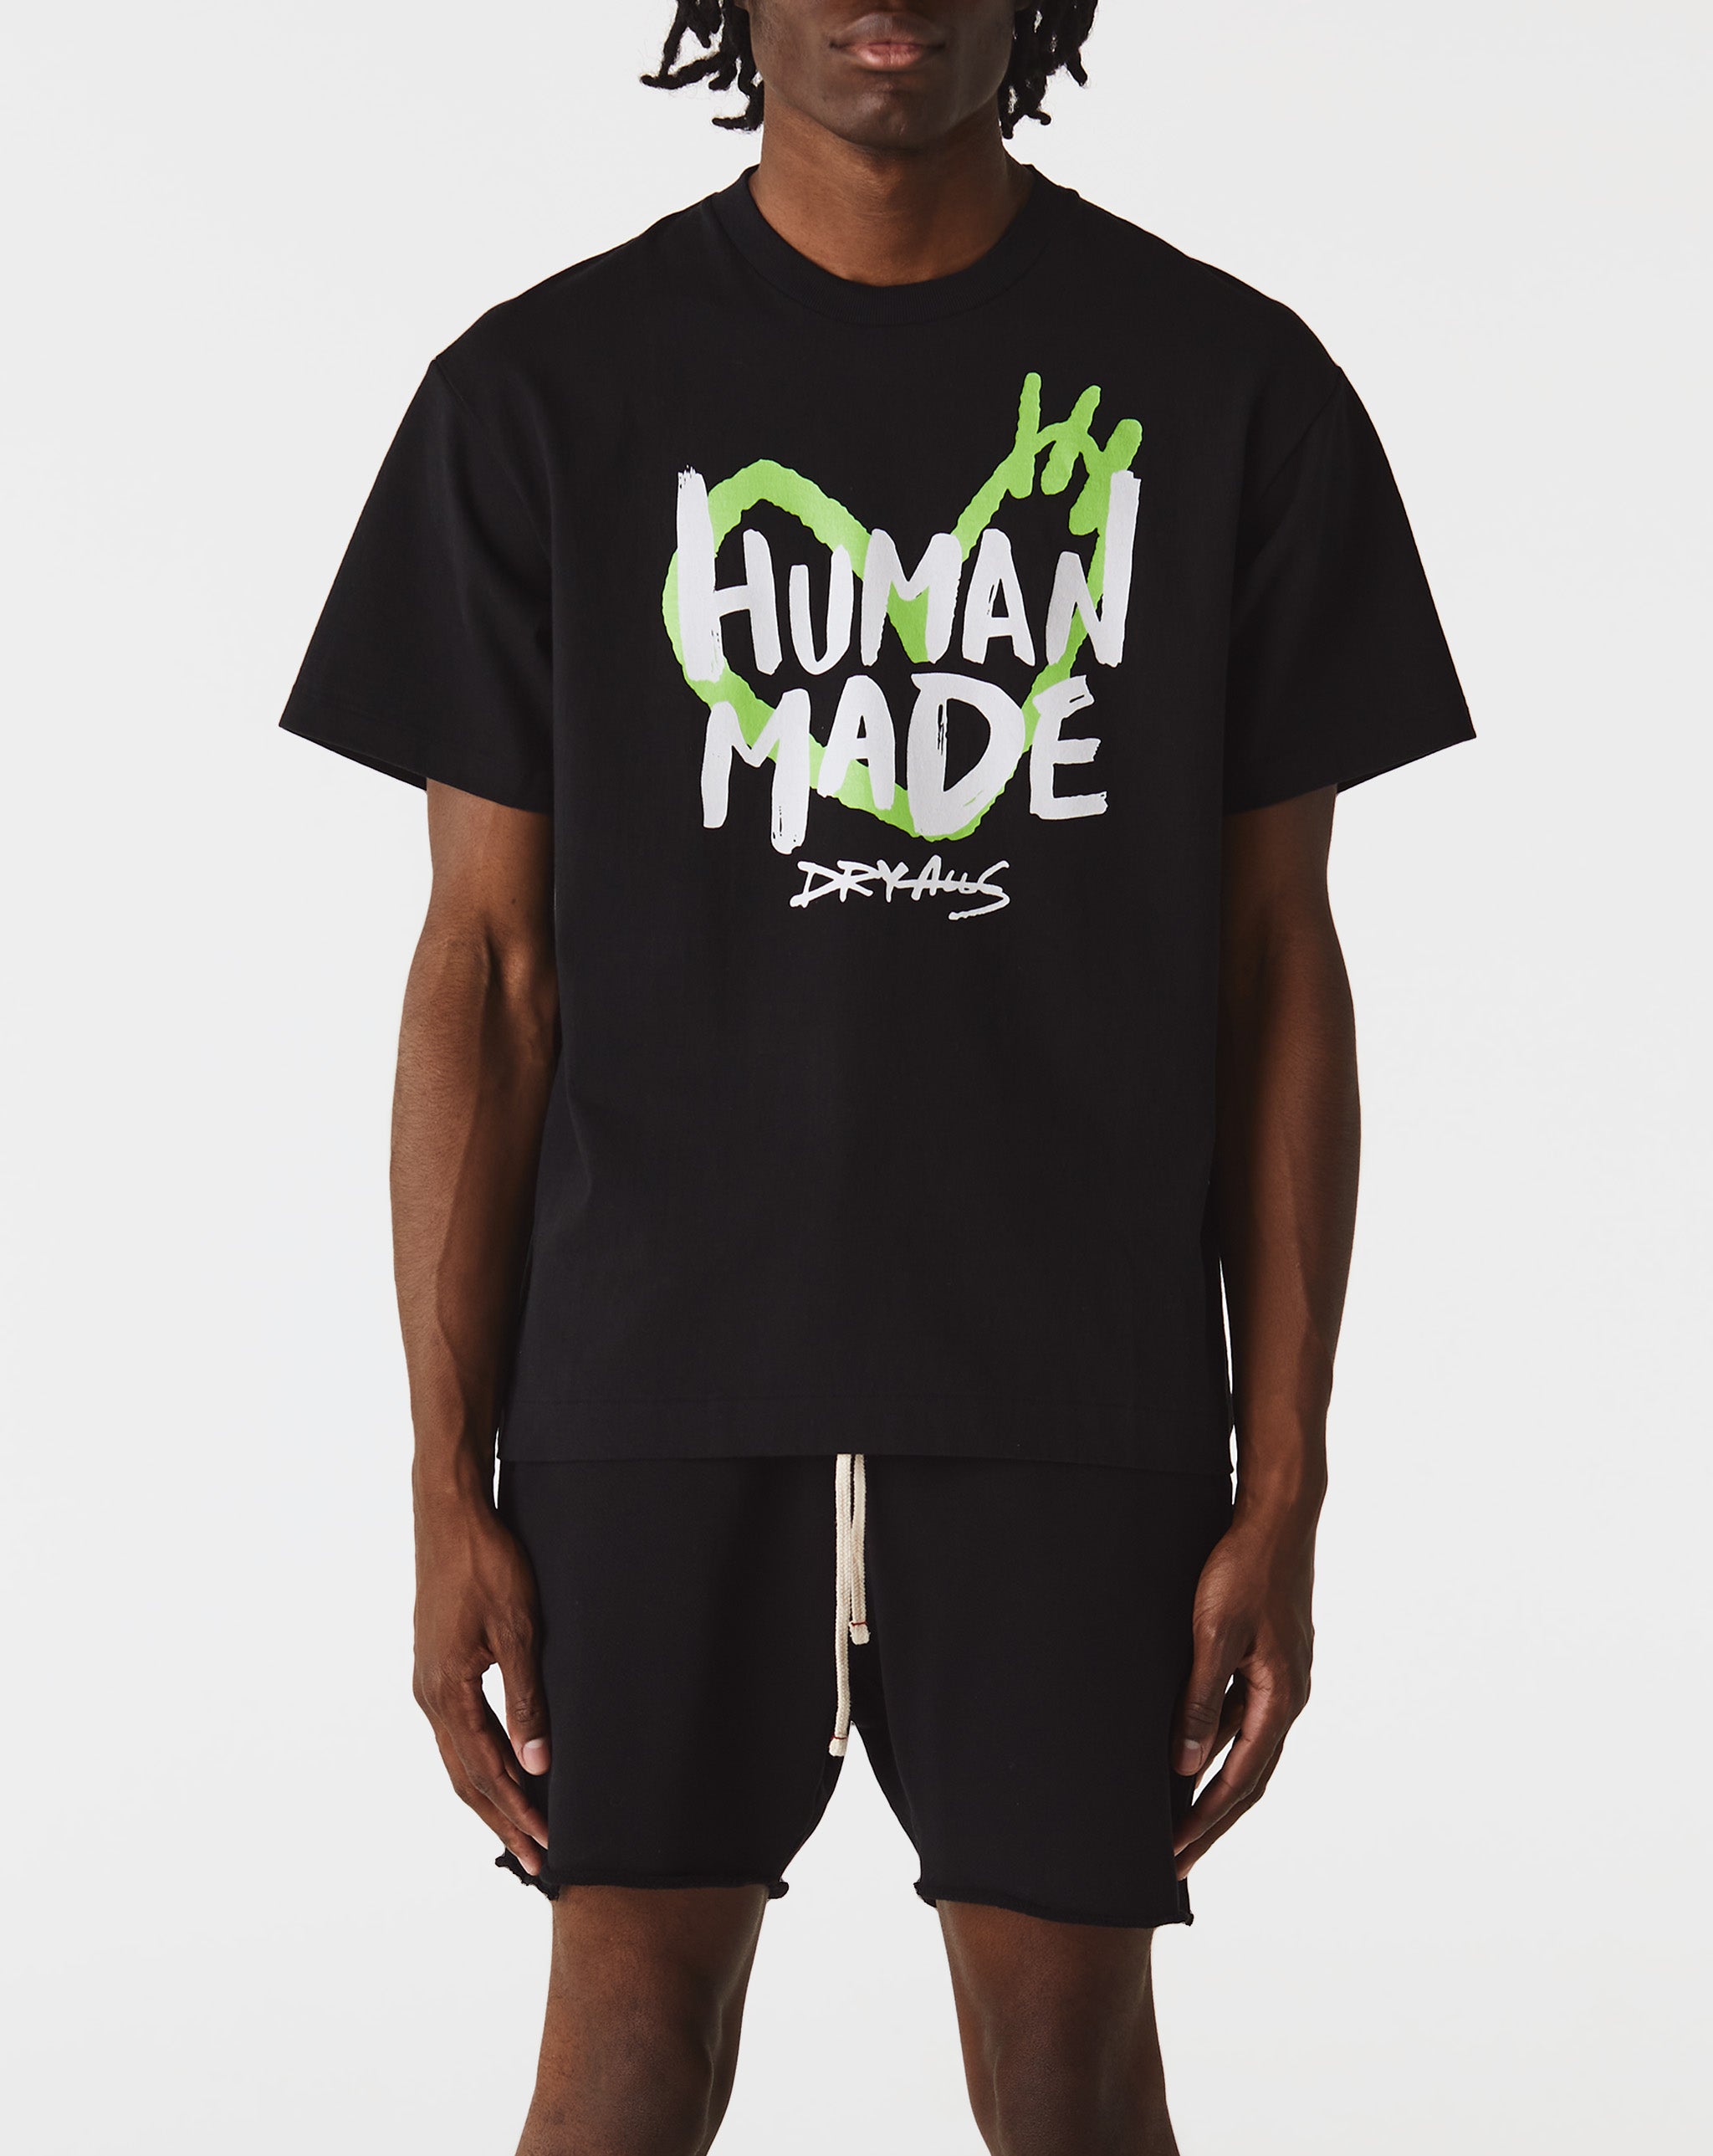 Human Made Graphic T-Shirt  - Cheap Urlfreeze Jordan outlet